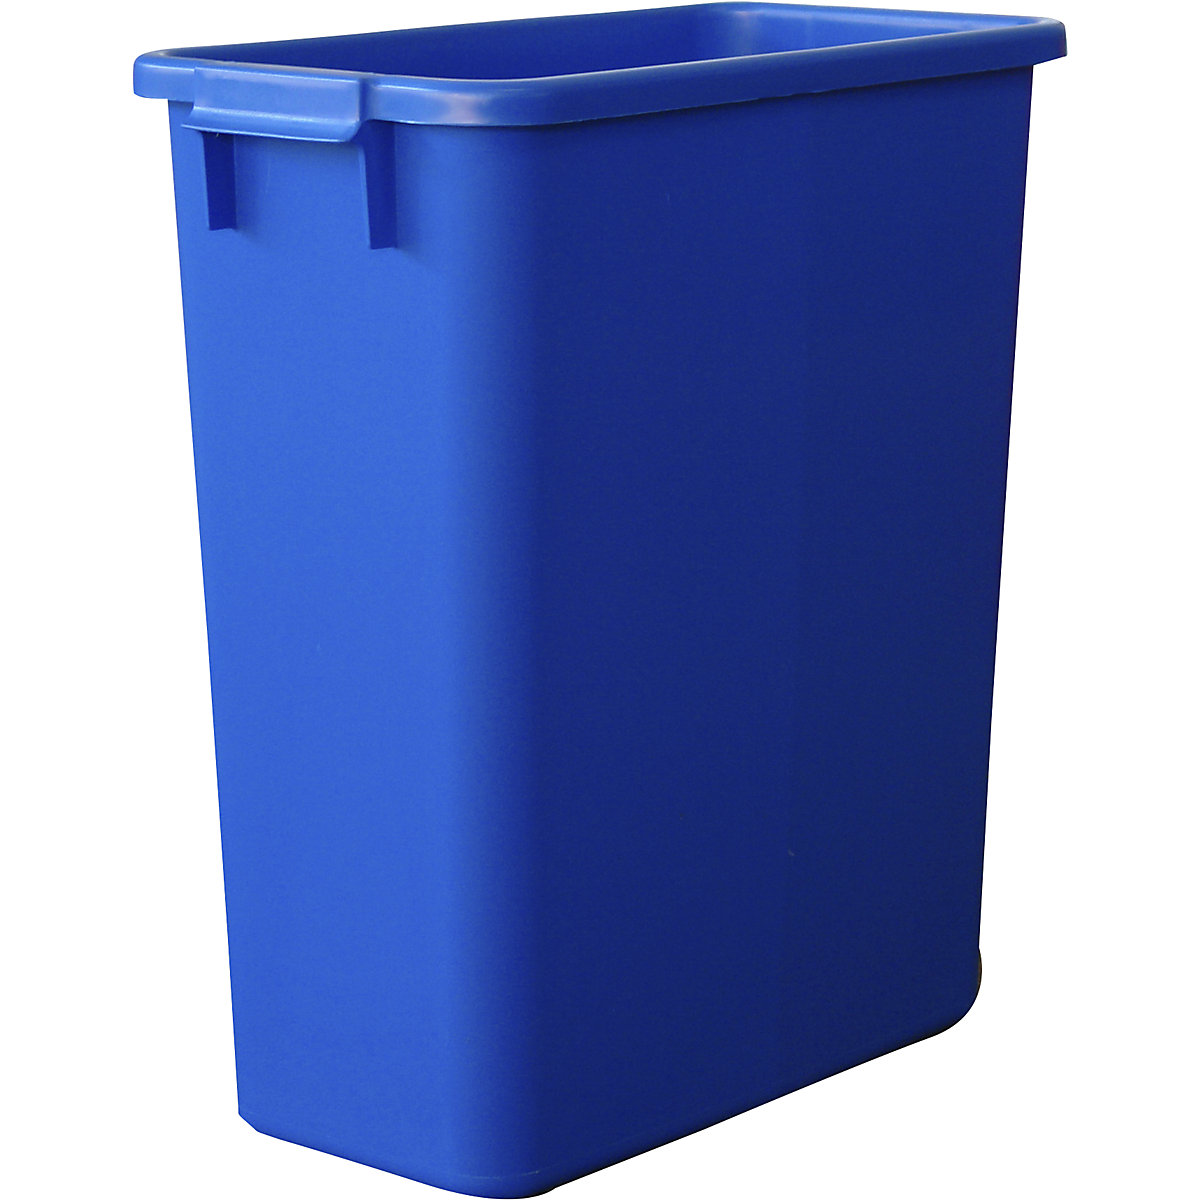 Mehrzweck-Behälter, Volumen 60 l, LxBxH 555 x 280 x 590 mm, blau-6